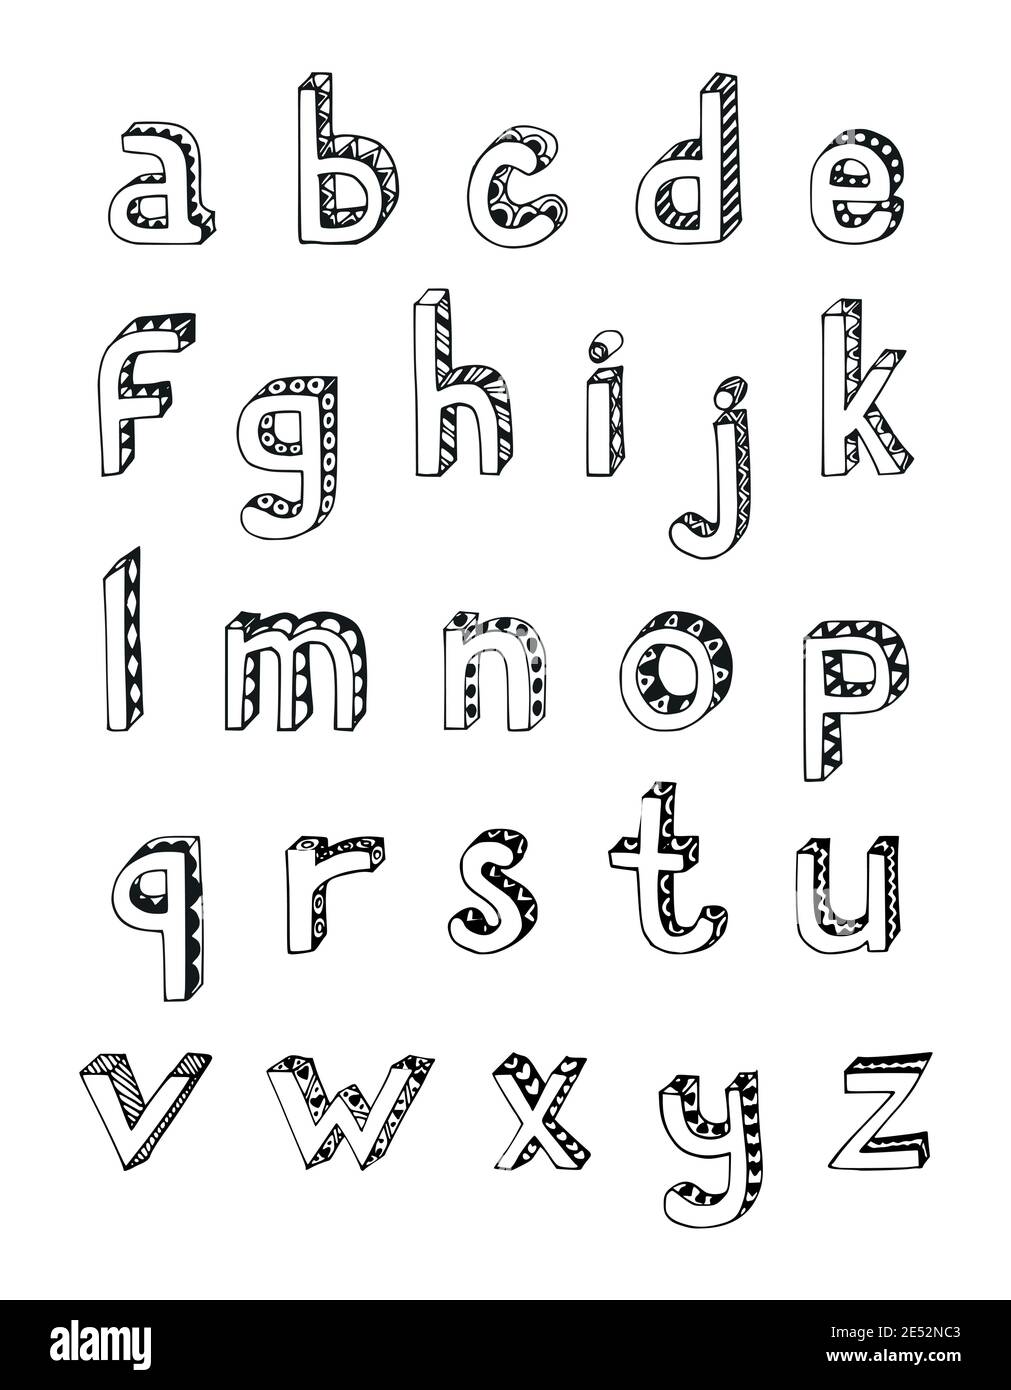 https://c8.alamy.com/compde/2e52nc3/skizze-handgezeichnete-3d-alphabet-der-kleinen-kleinbuchstaben-buchstaben-isoliert-vektor-illustration-2e52nc3.jpg